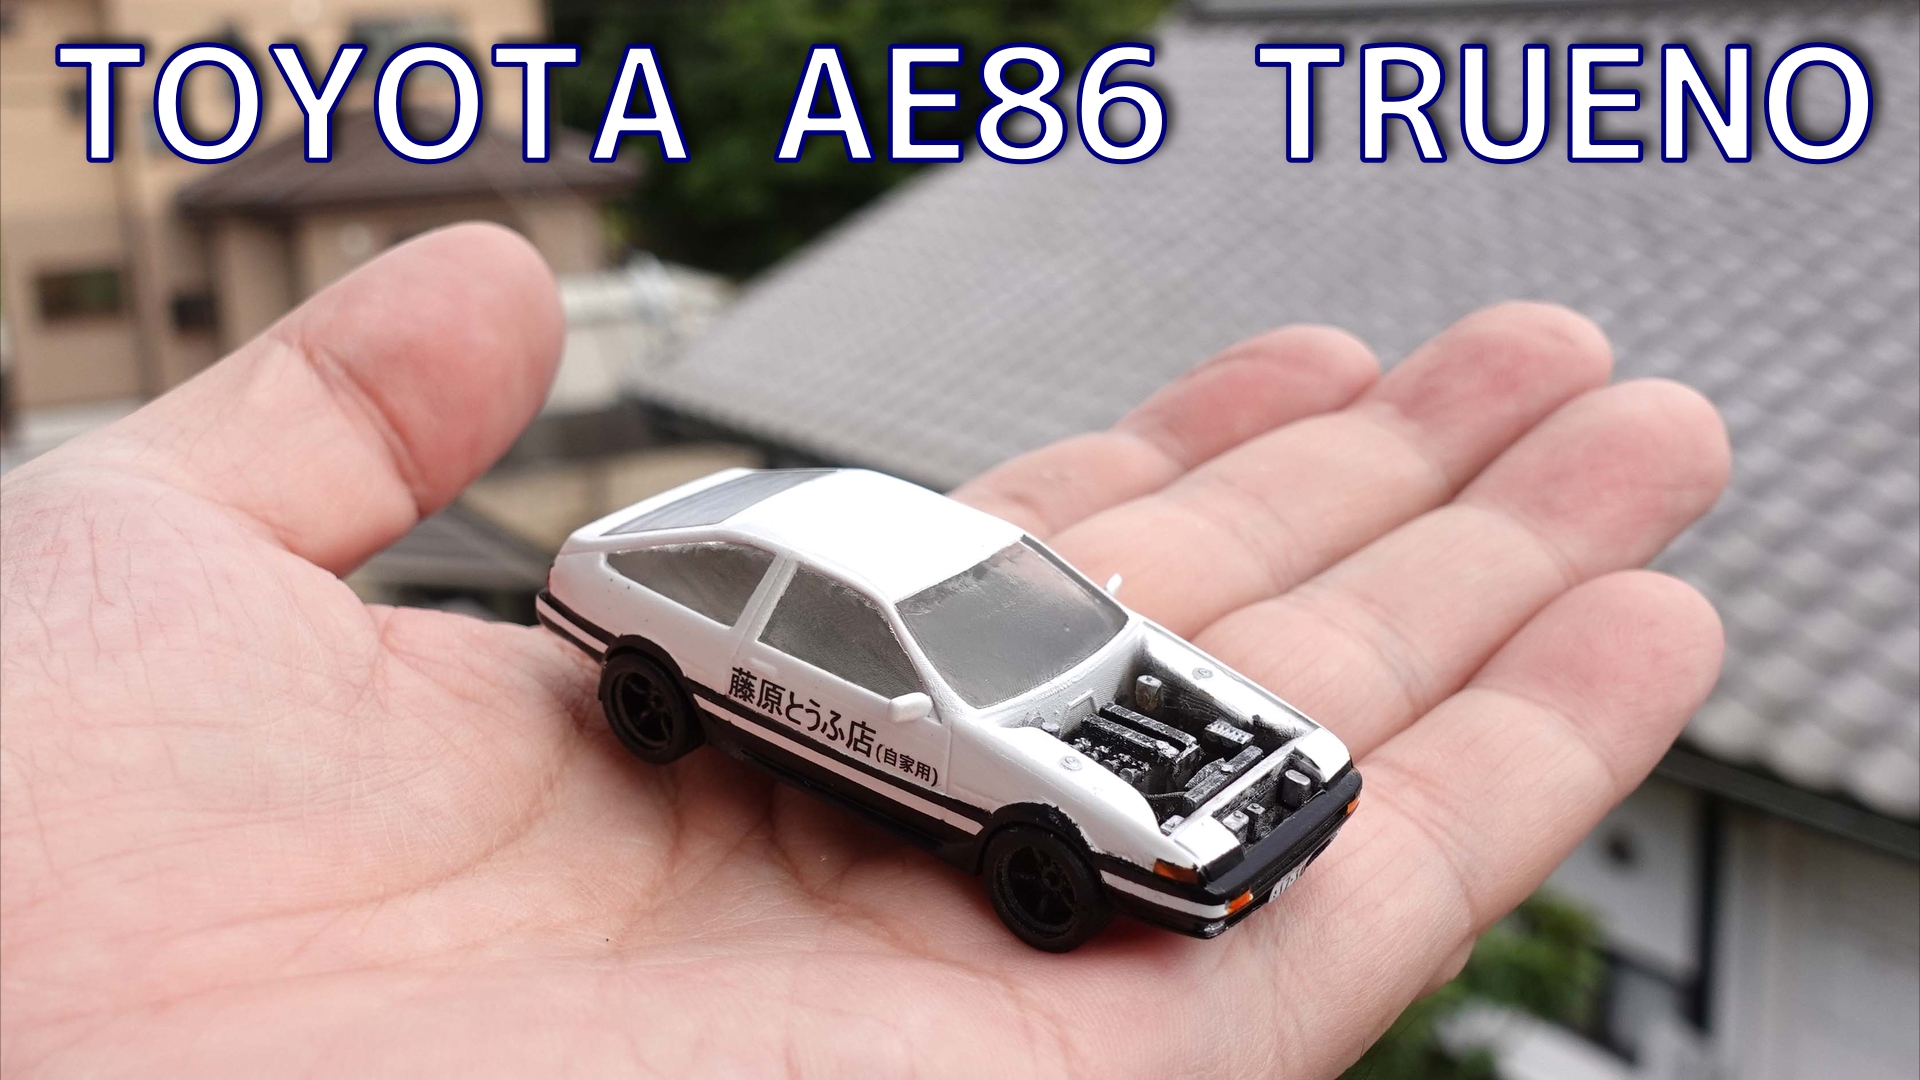 Toyota Ae86 Trueno 1 64 Scale を3dプリンターで作ってみた Dendeba Laboratory でんでば研究所